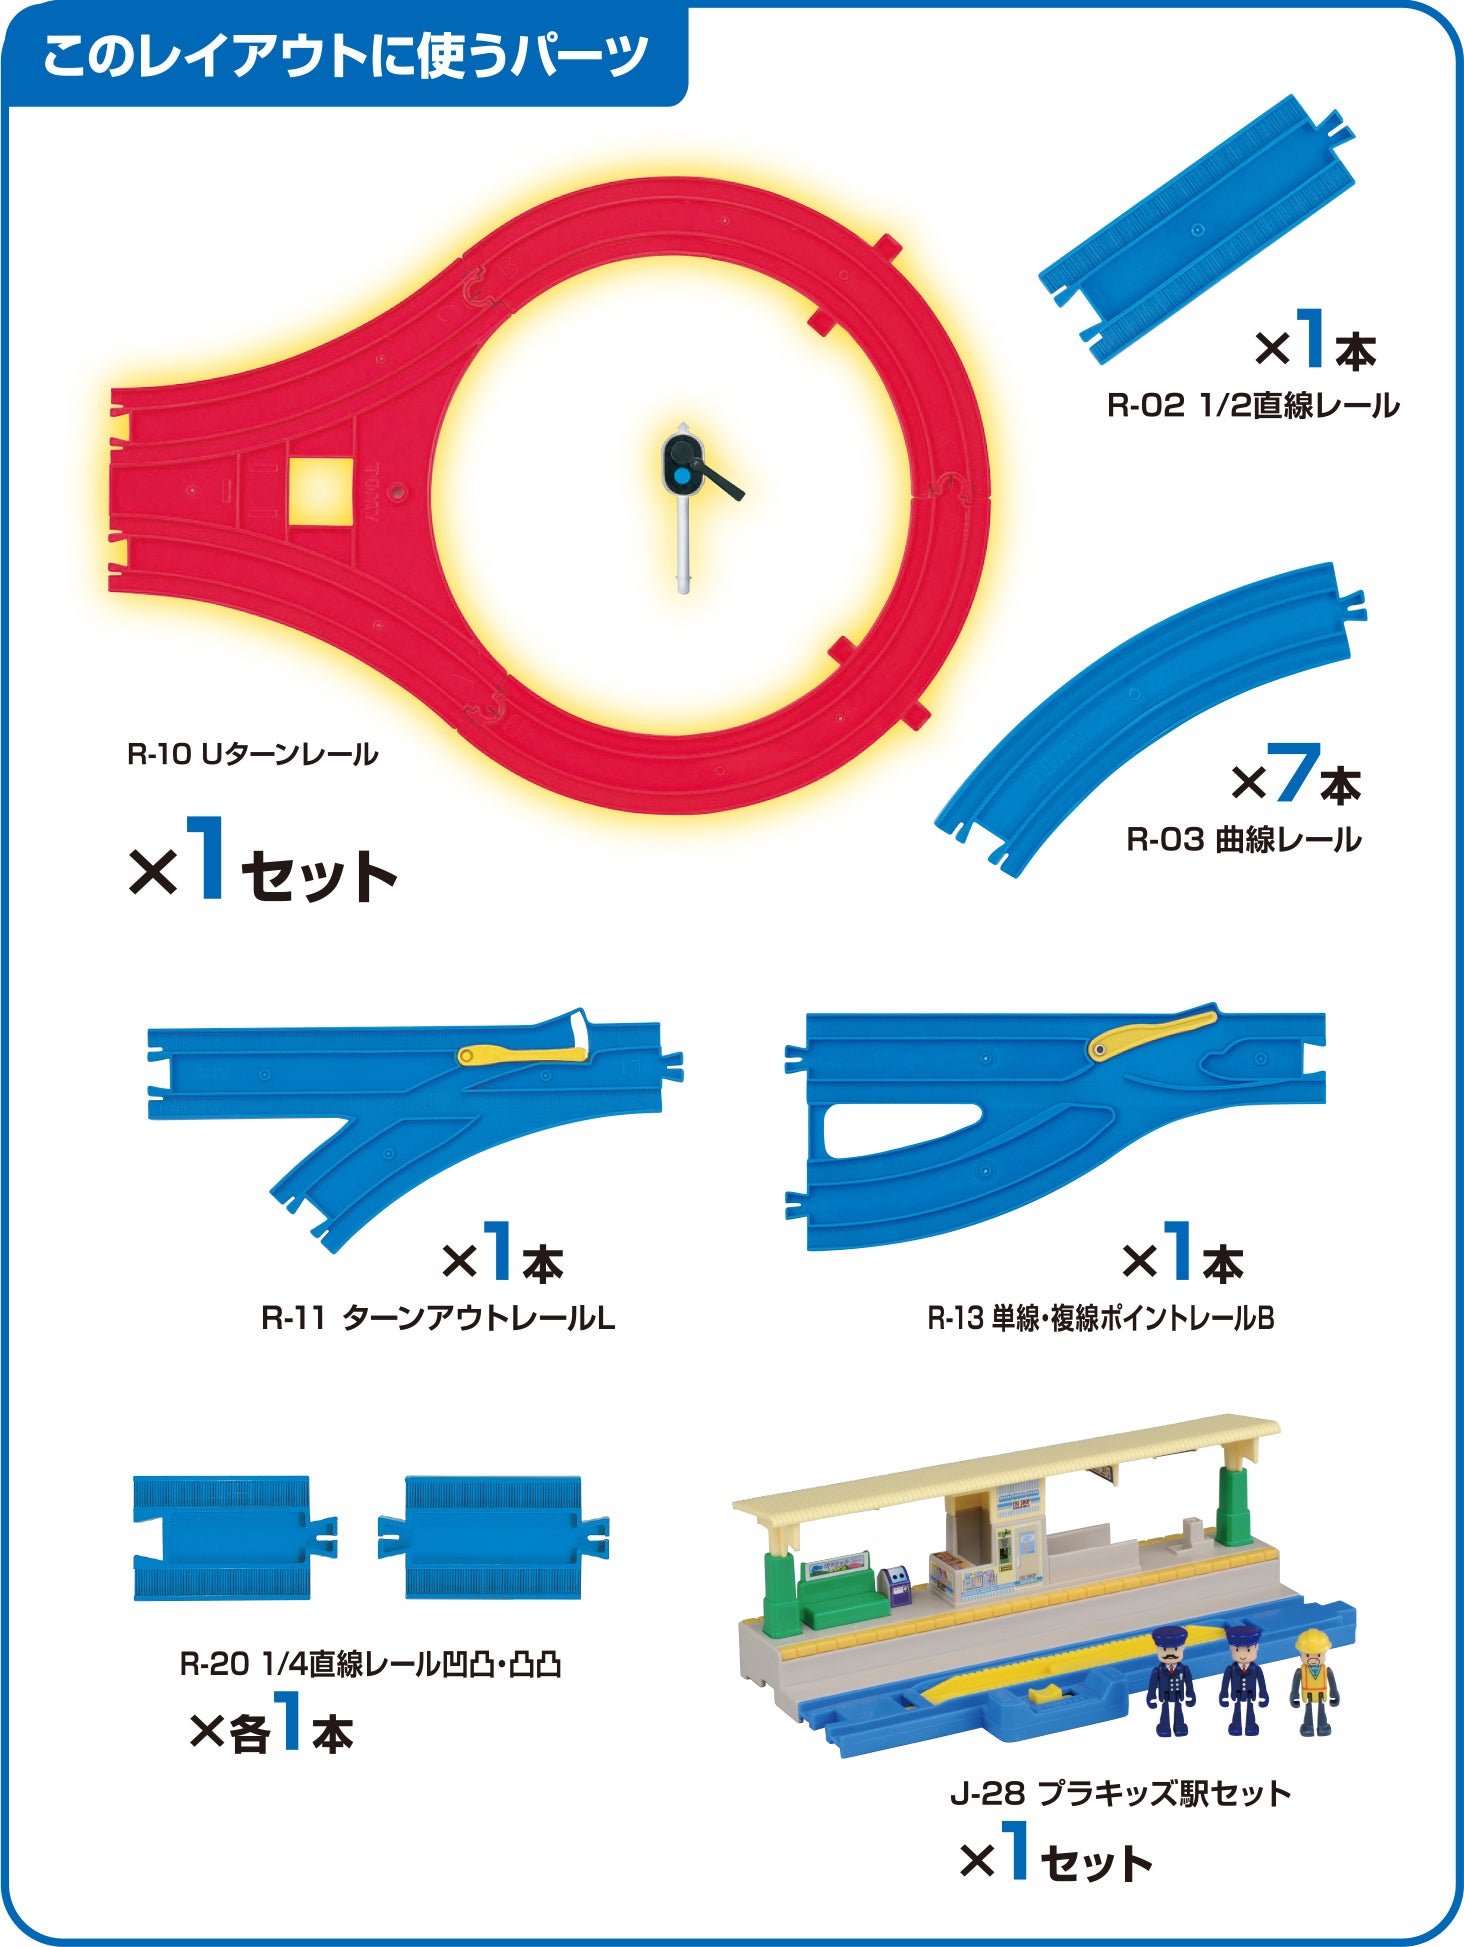 ① プラレール Ｕターンレール - 鉄道模型